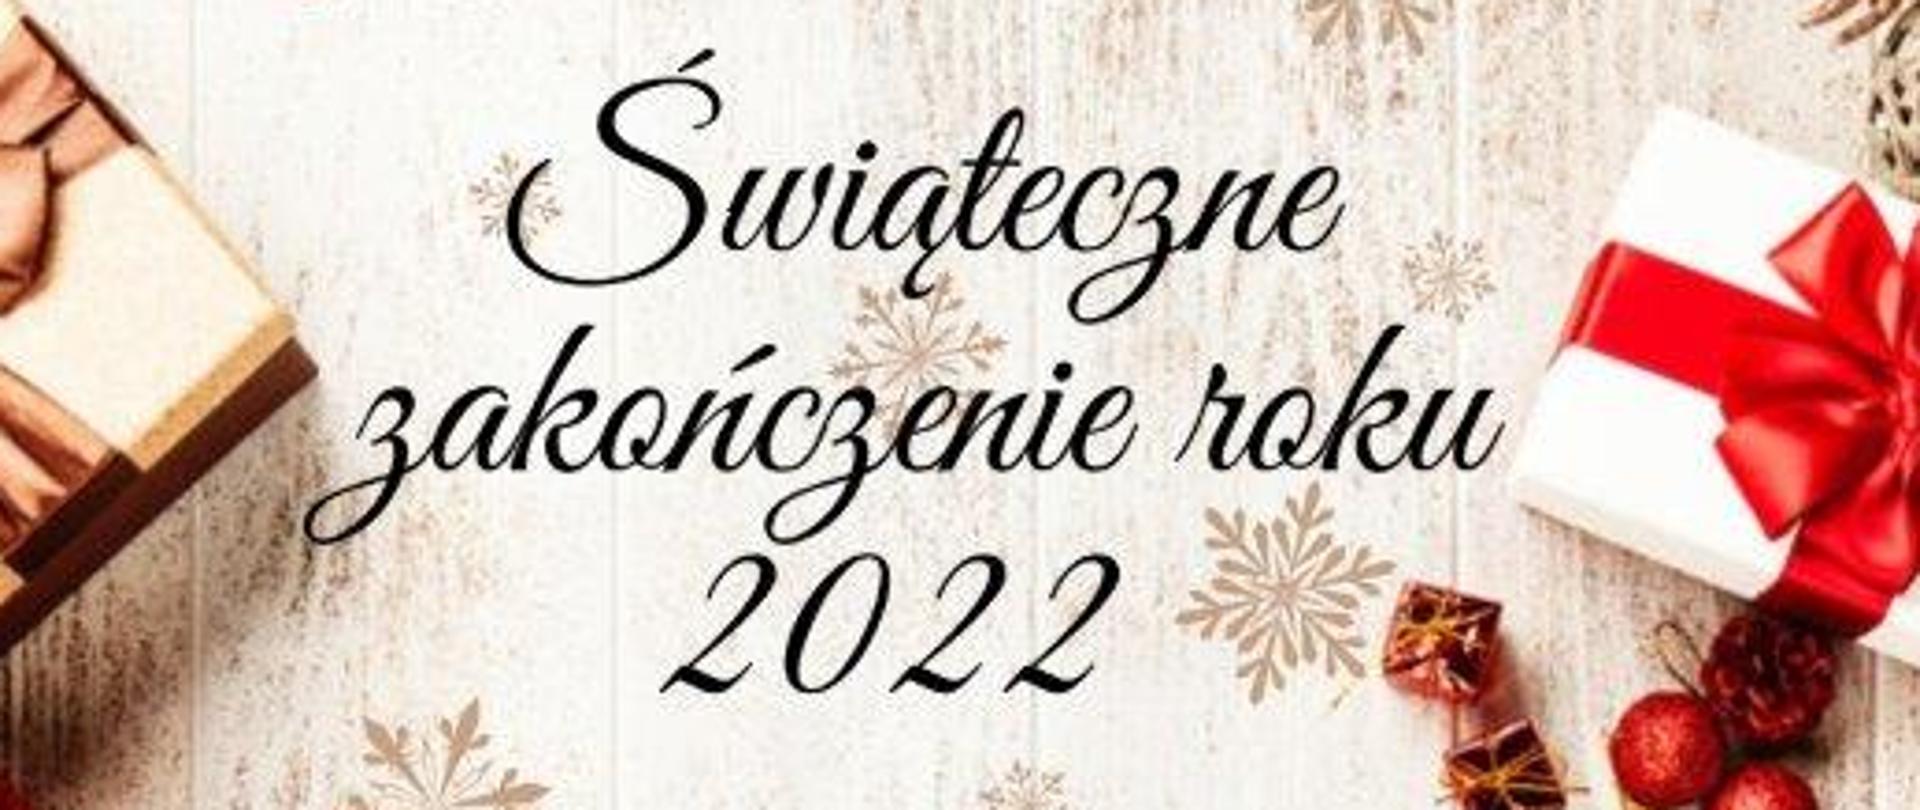 Plakat informujący o popisie klasy fortepianu p. Pauliny Kukuczki w dniu 20 grudnia 2022 r. o godz.: 17:00. W tle zdjęcie ze świątecznymi elementami: śnieżynki, gwiazdki, stroiki świąteczne.